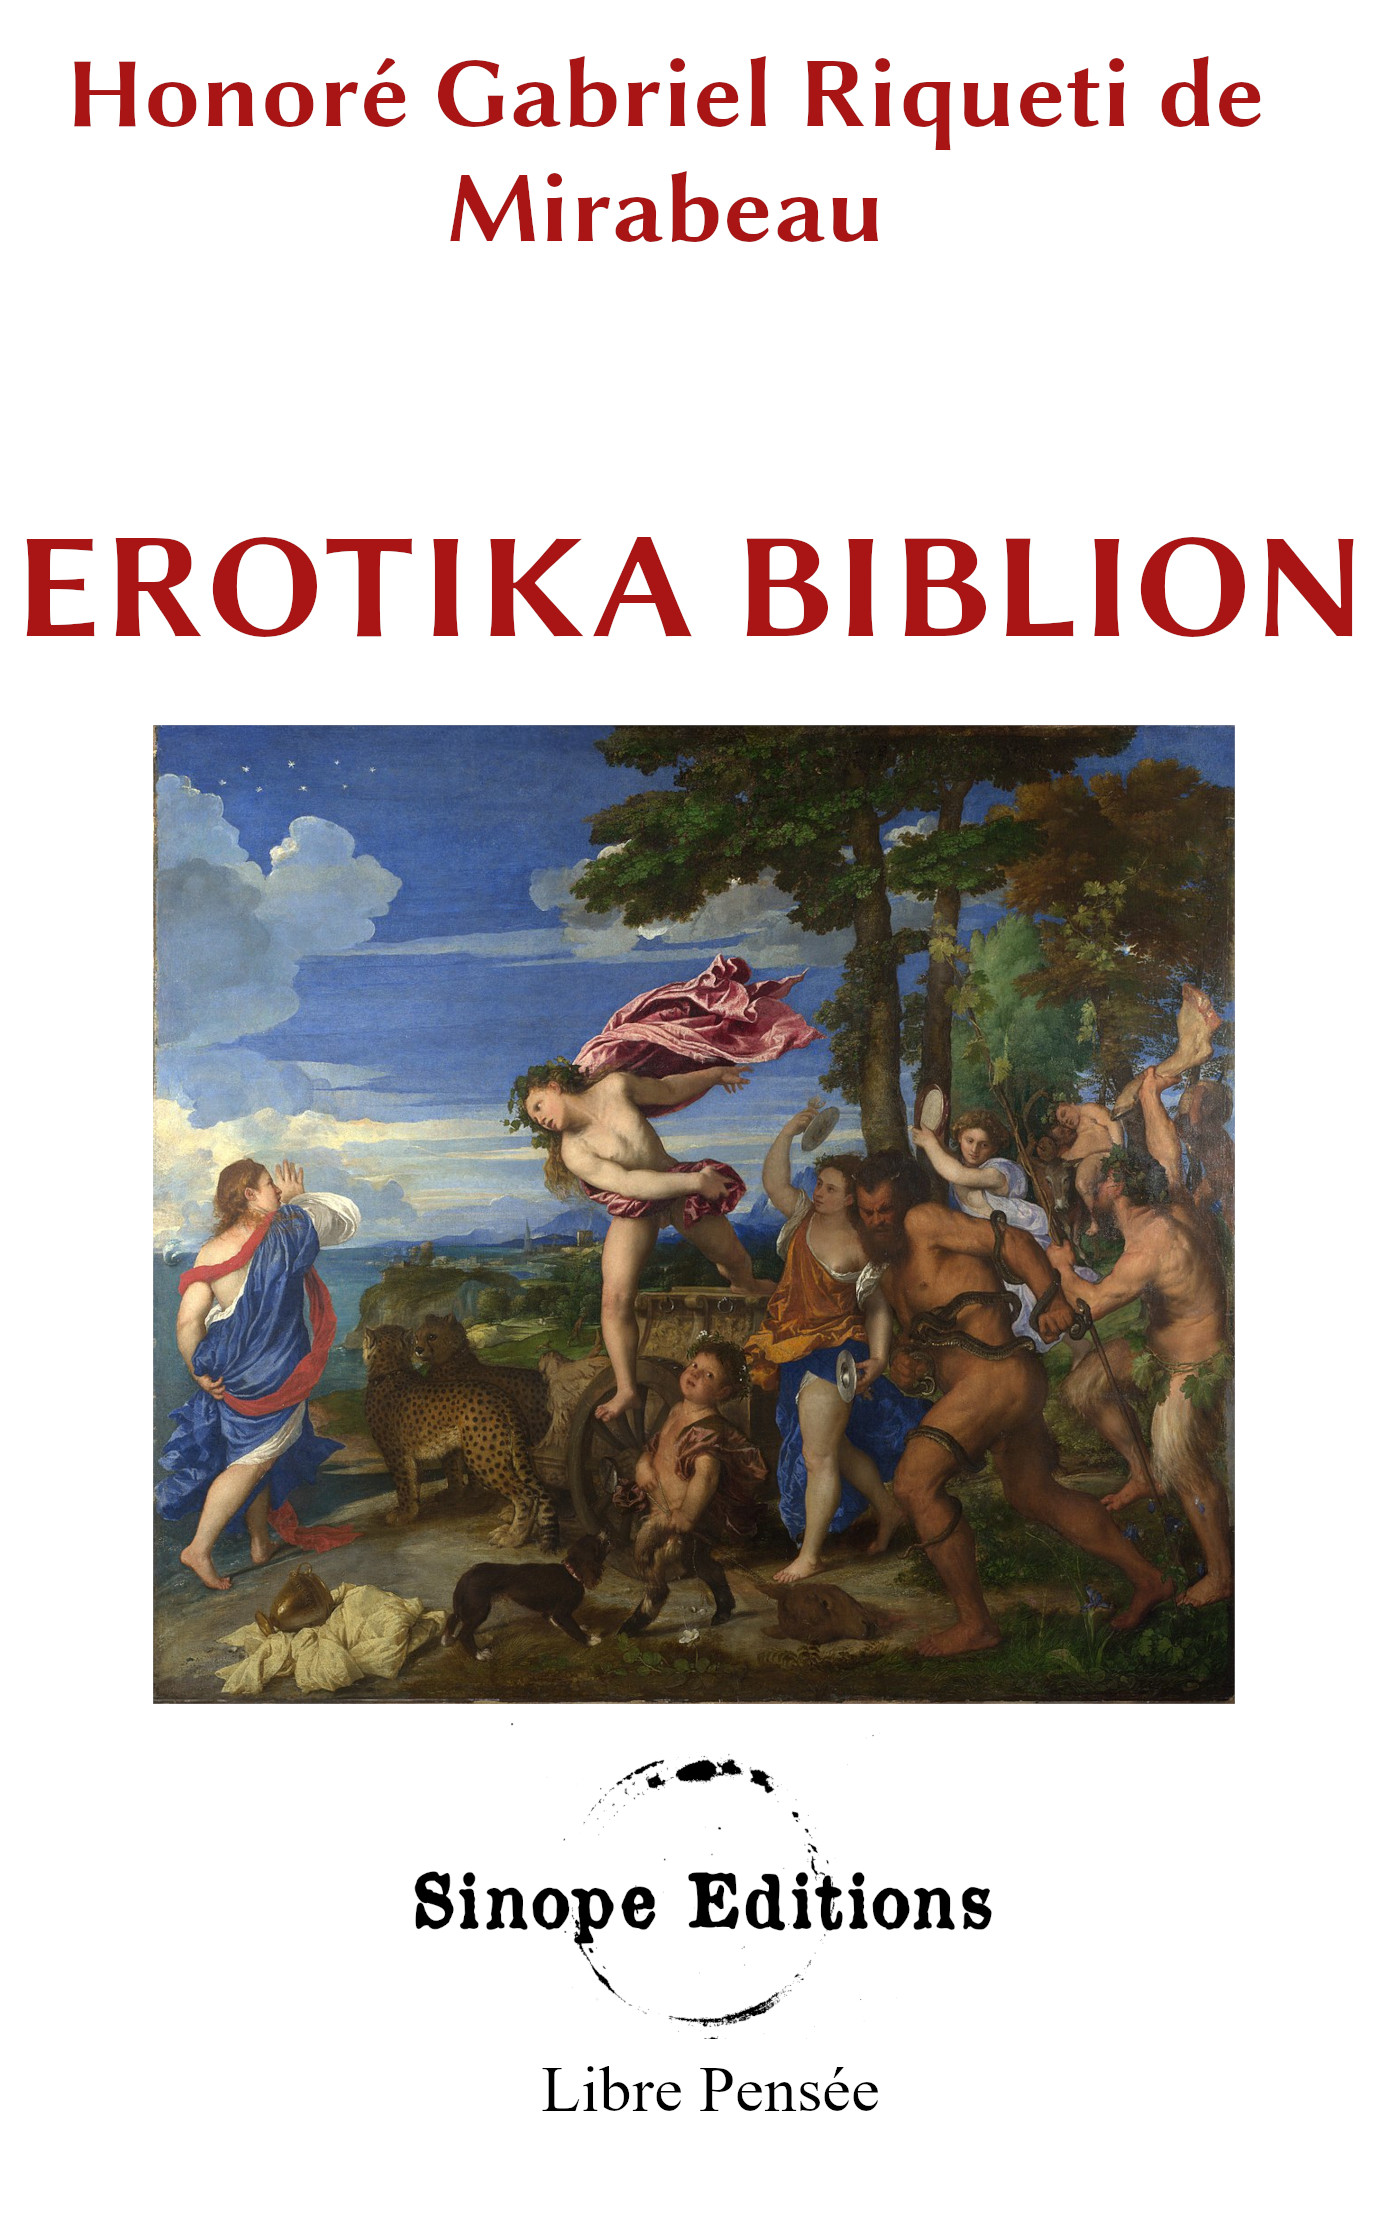 Erotika Biblion, Mirabeau